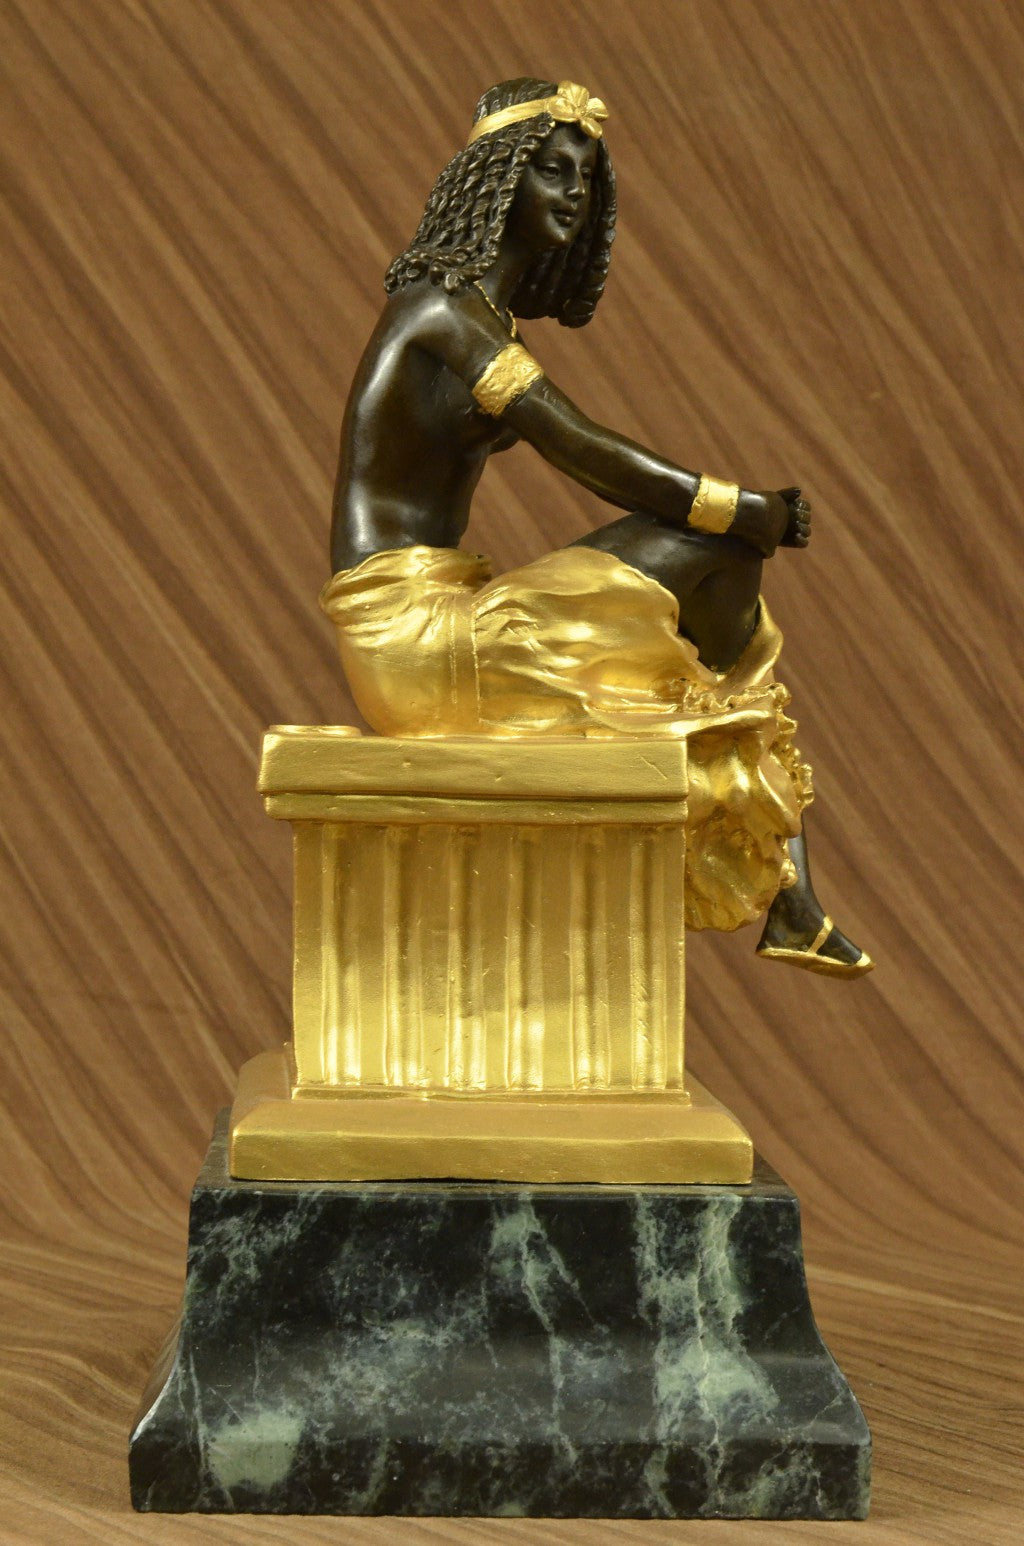 Handcrafted bronze sculpture SALE Lrg Art Chiparus Deco Nouveau Art Signed